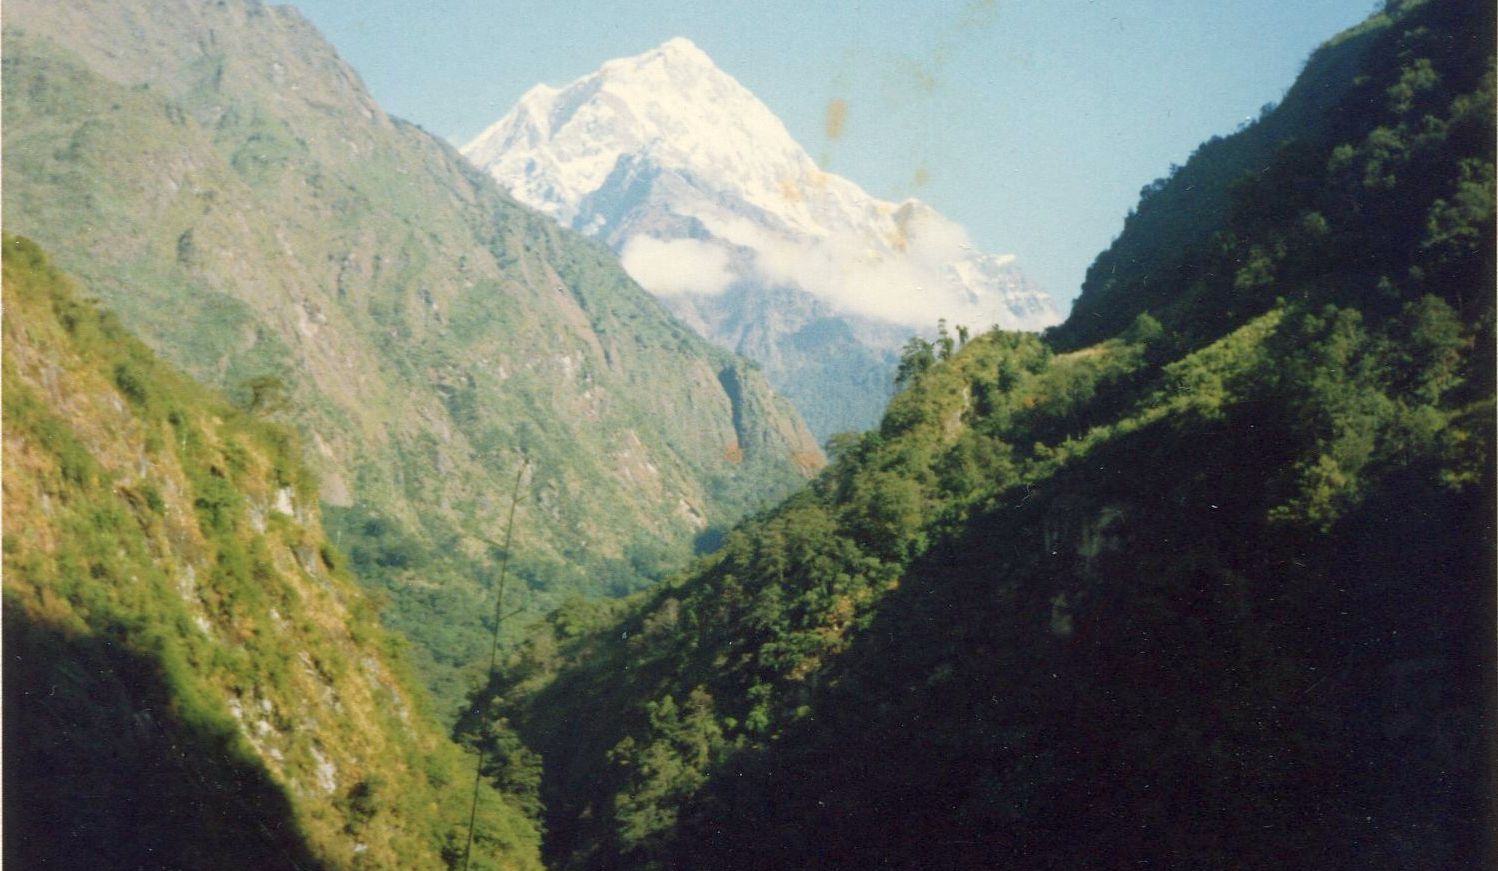 Upper Myagdi Khola Valley